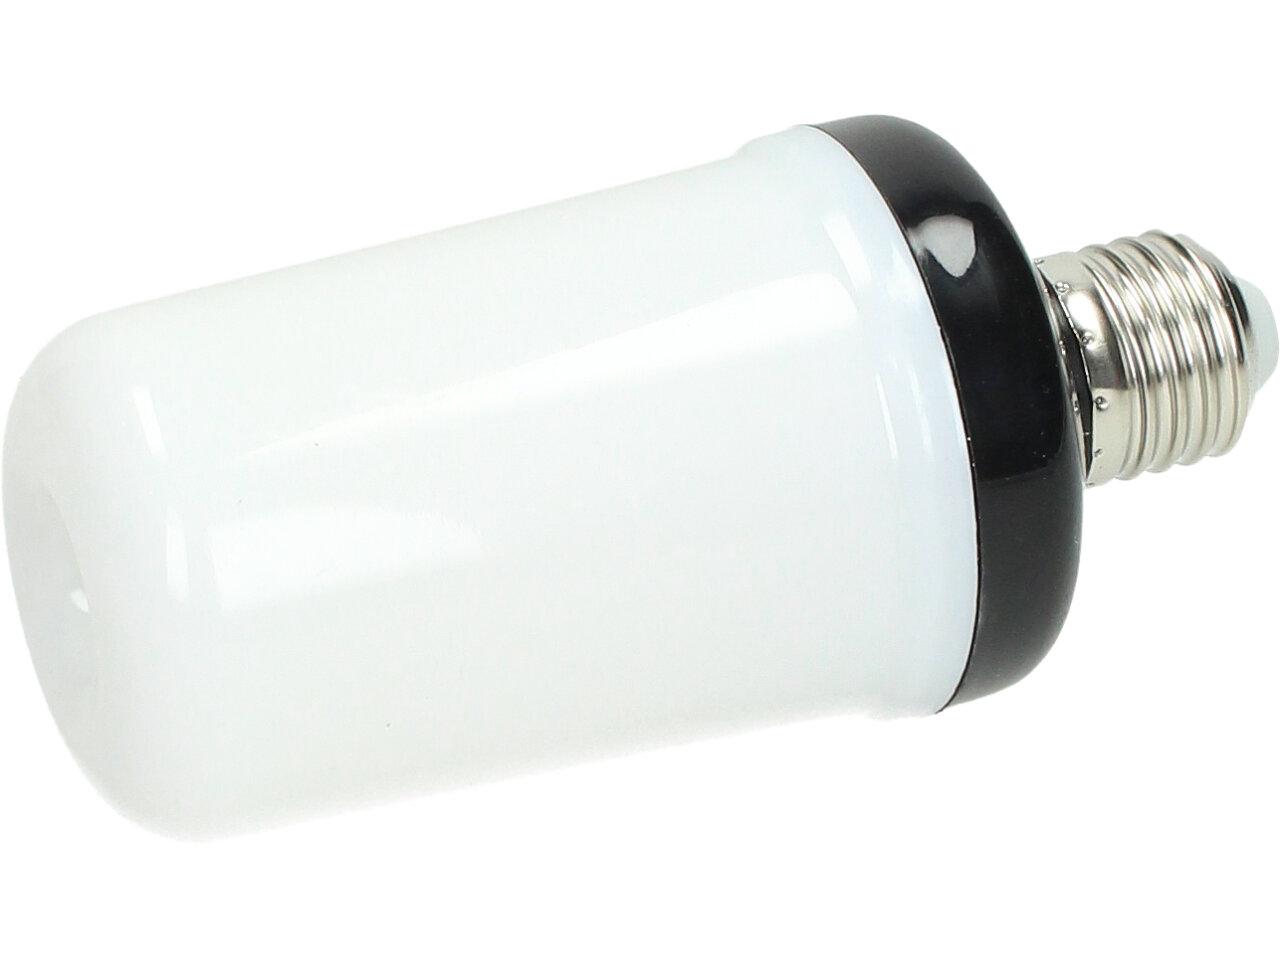 LED žárovka s efektem plamene 7W 